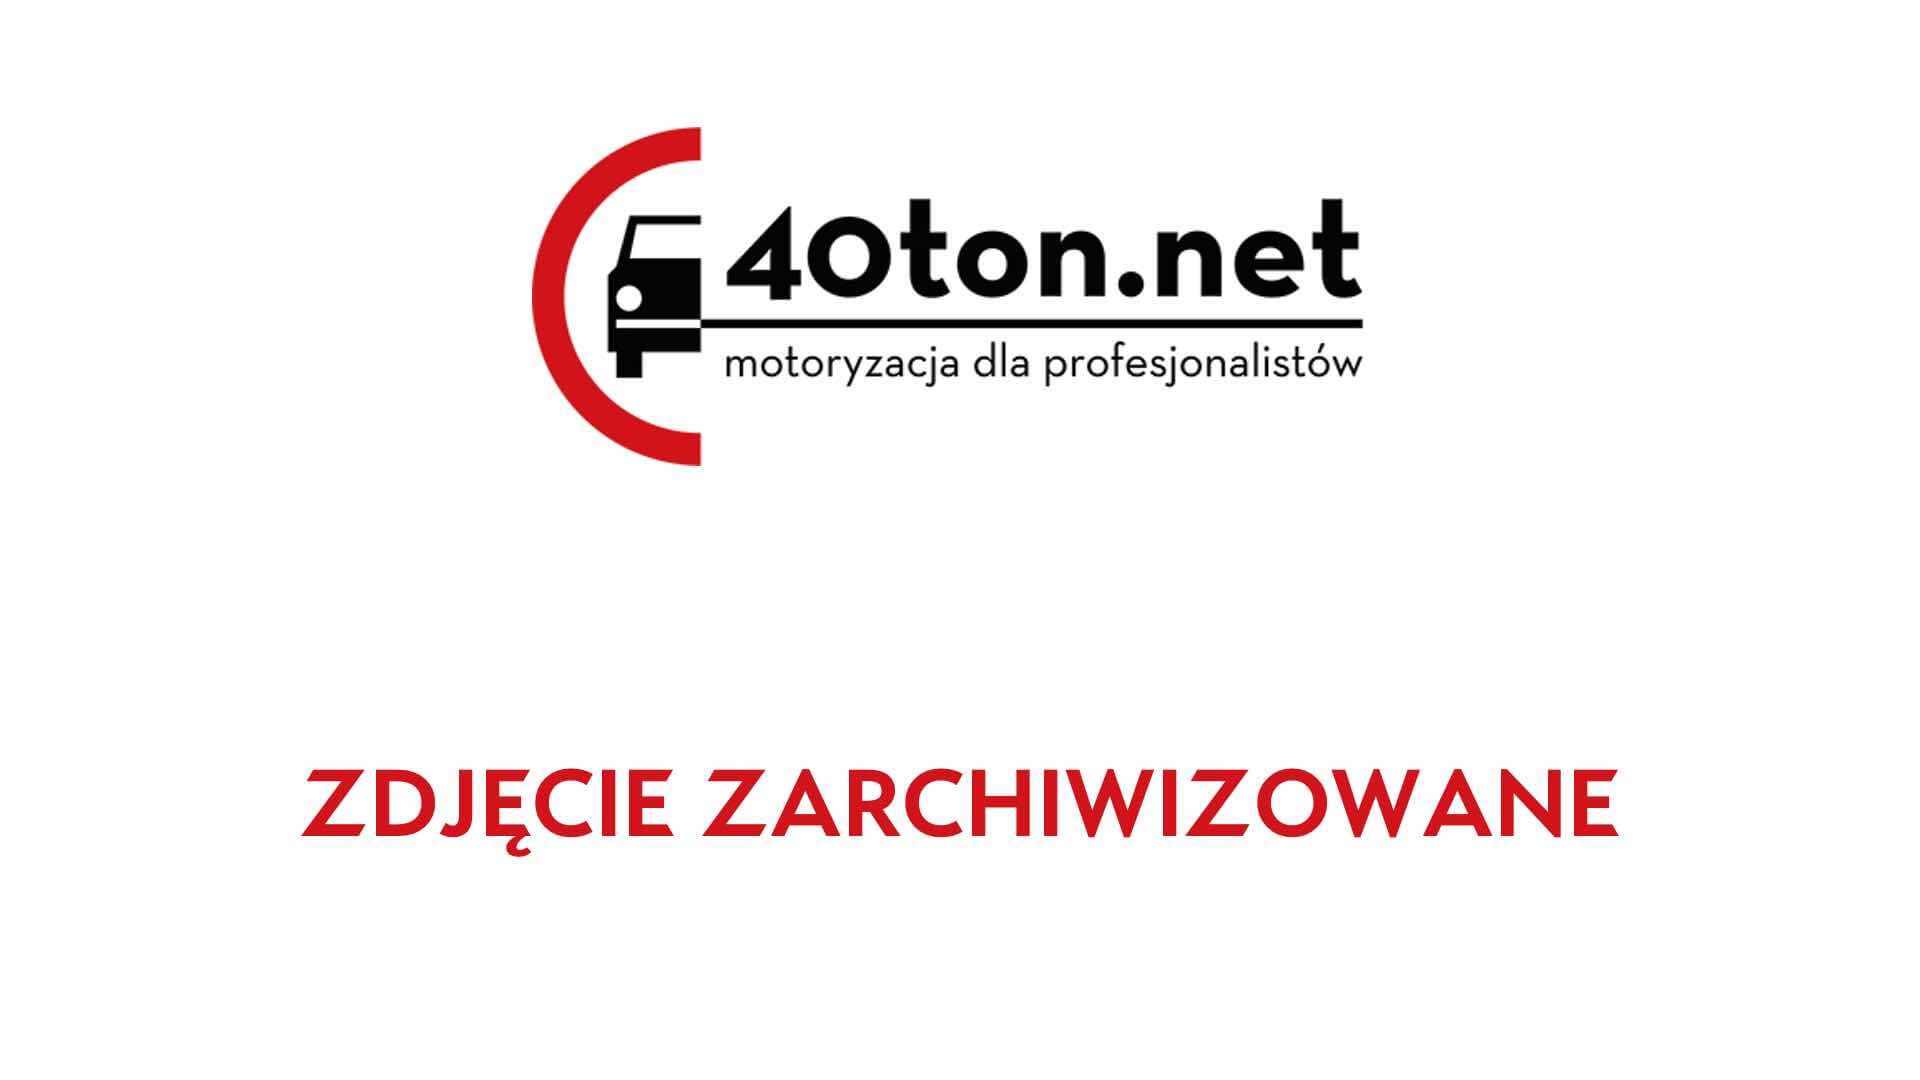 polskie_ciezarowki_40ton_truckspotters_1308